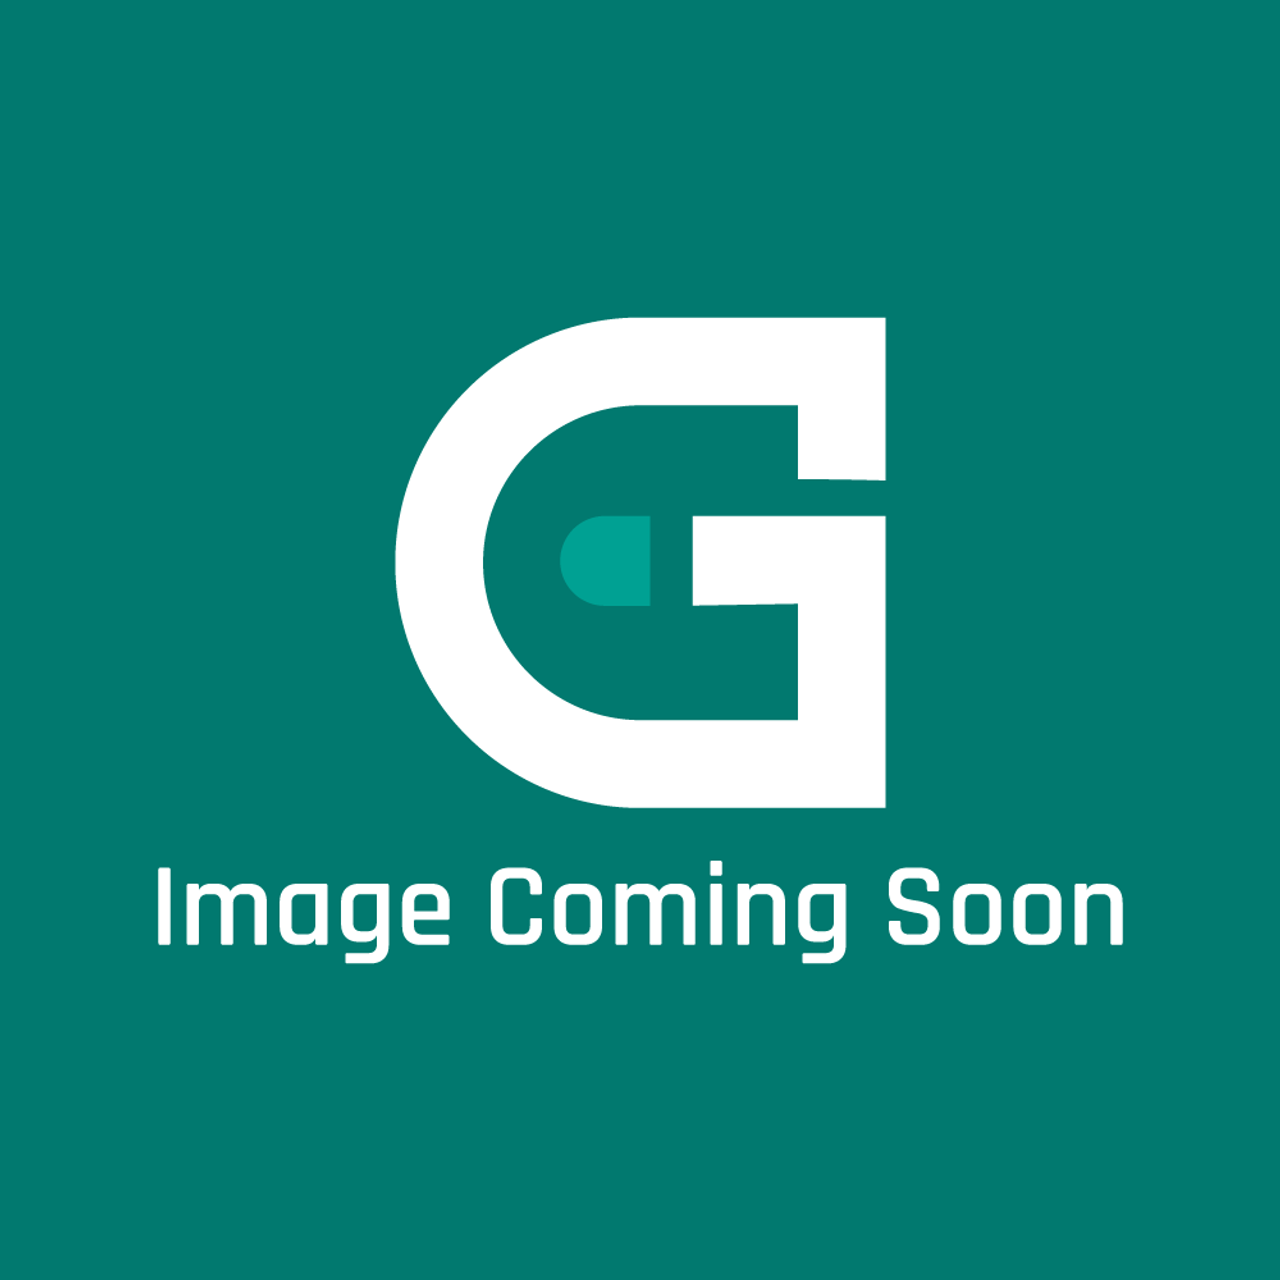 GE Appliances WJ94X22870 - Fan Motor - Image Coming Soon!